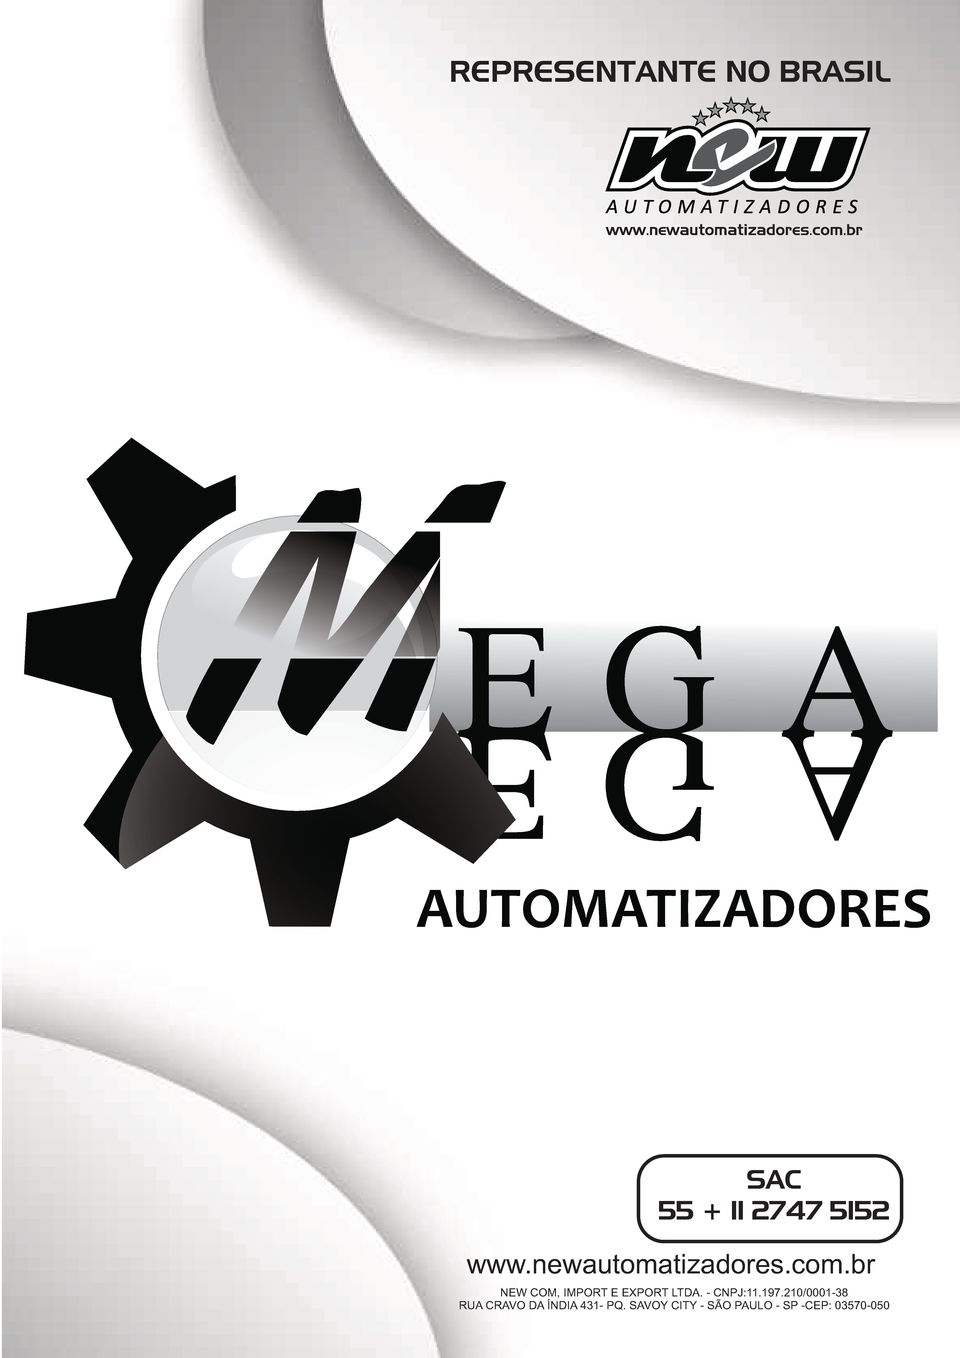 newautomatizadores.com.br NEW COM, IMPORT E EXPORT LTDA.